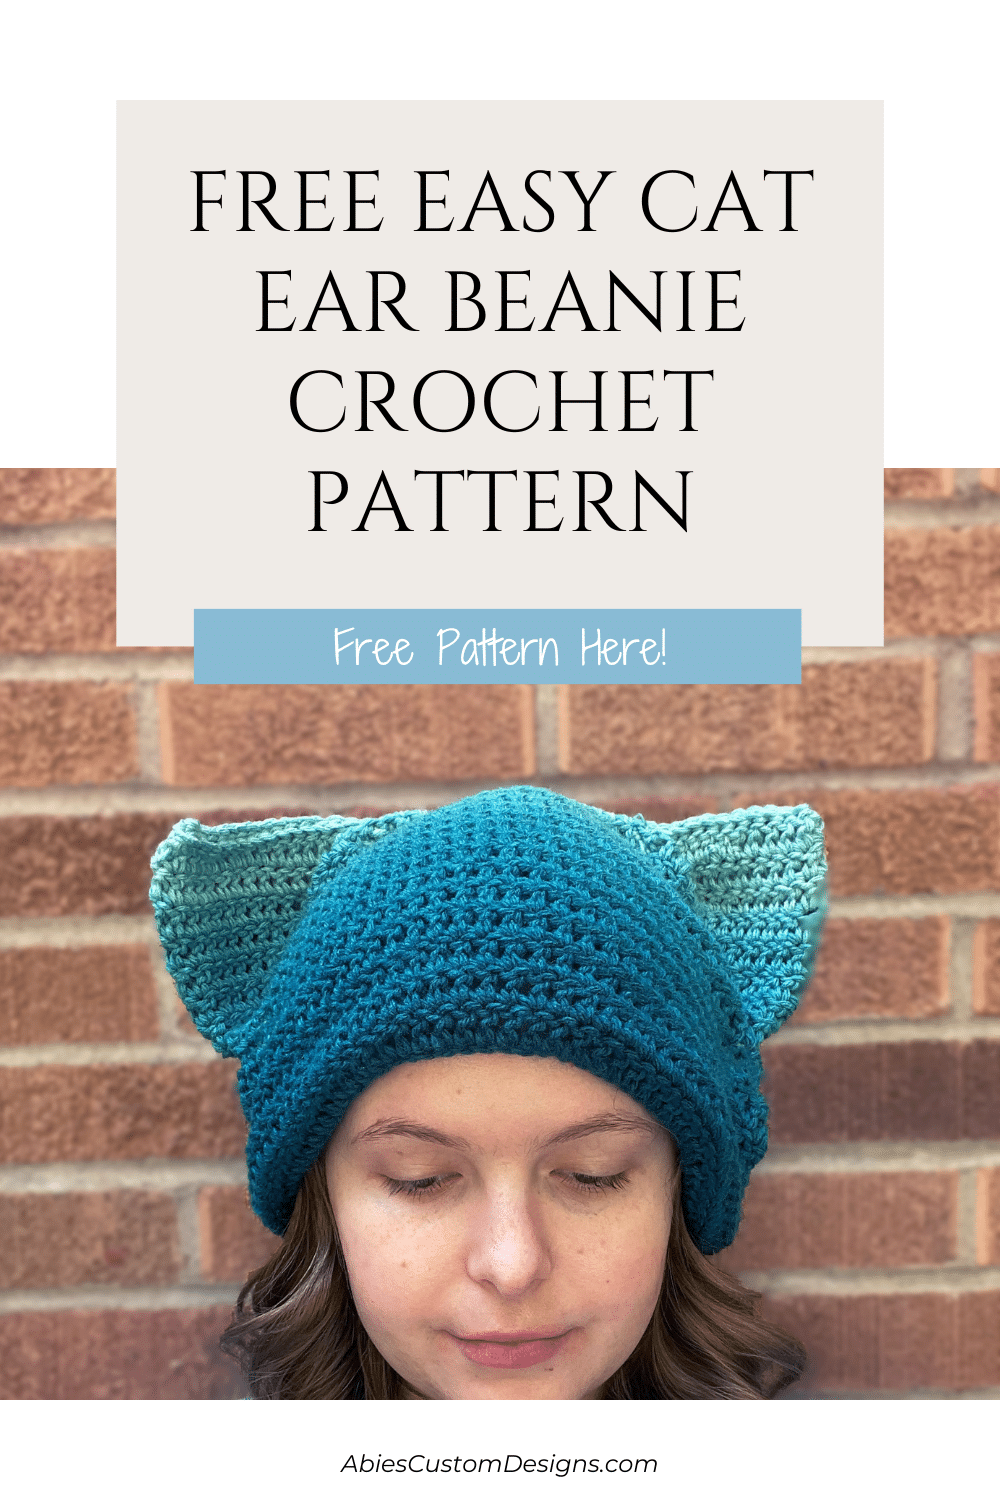 Free Easy Cat Ear Beanie Crochet Pattern